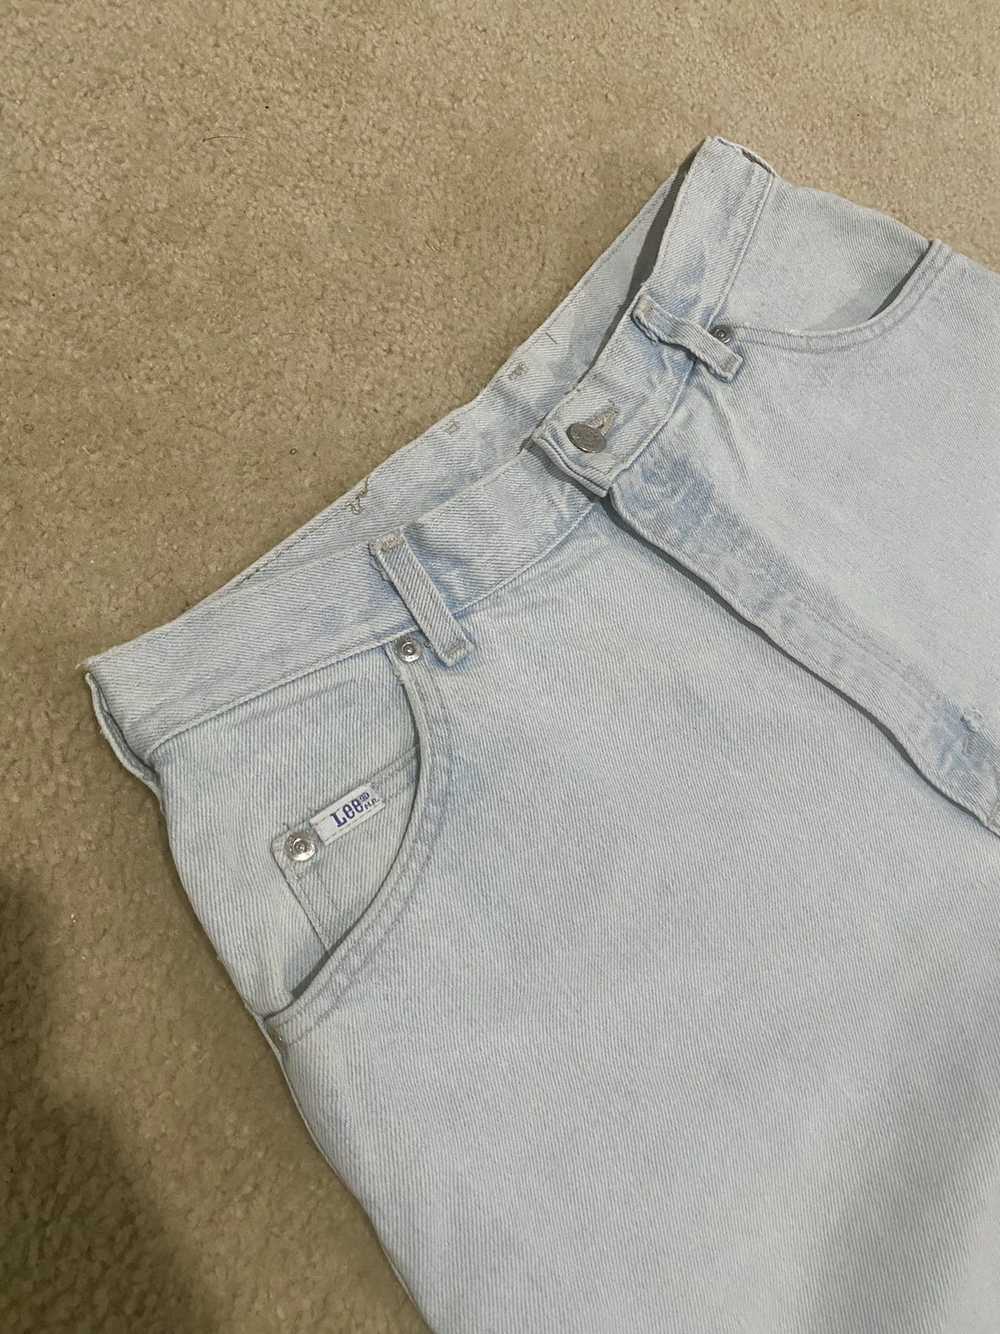 Lee × Vintage Vintage Lightwash Lee Denim Jeans - image 4